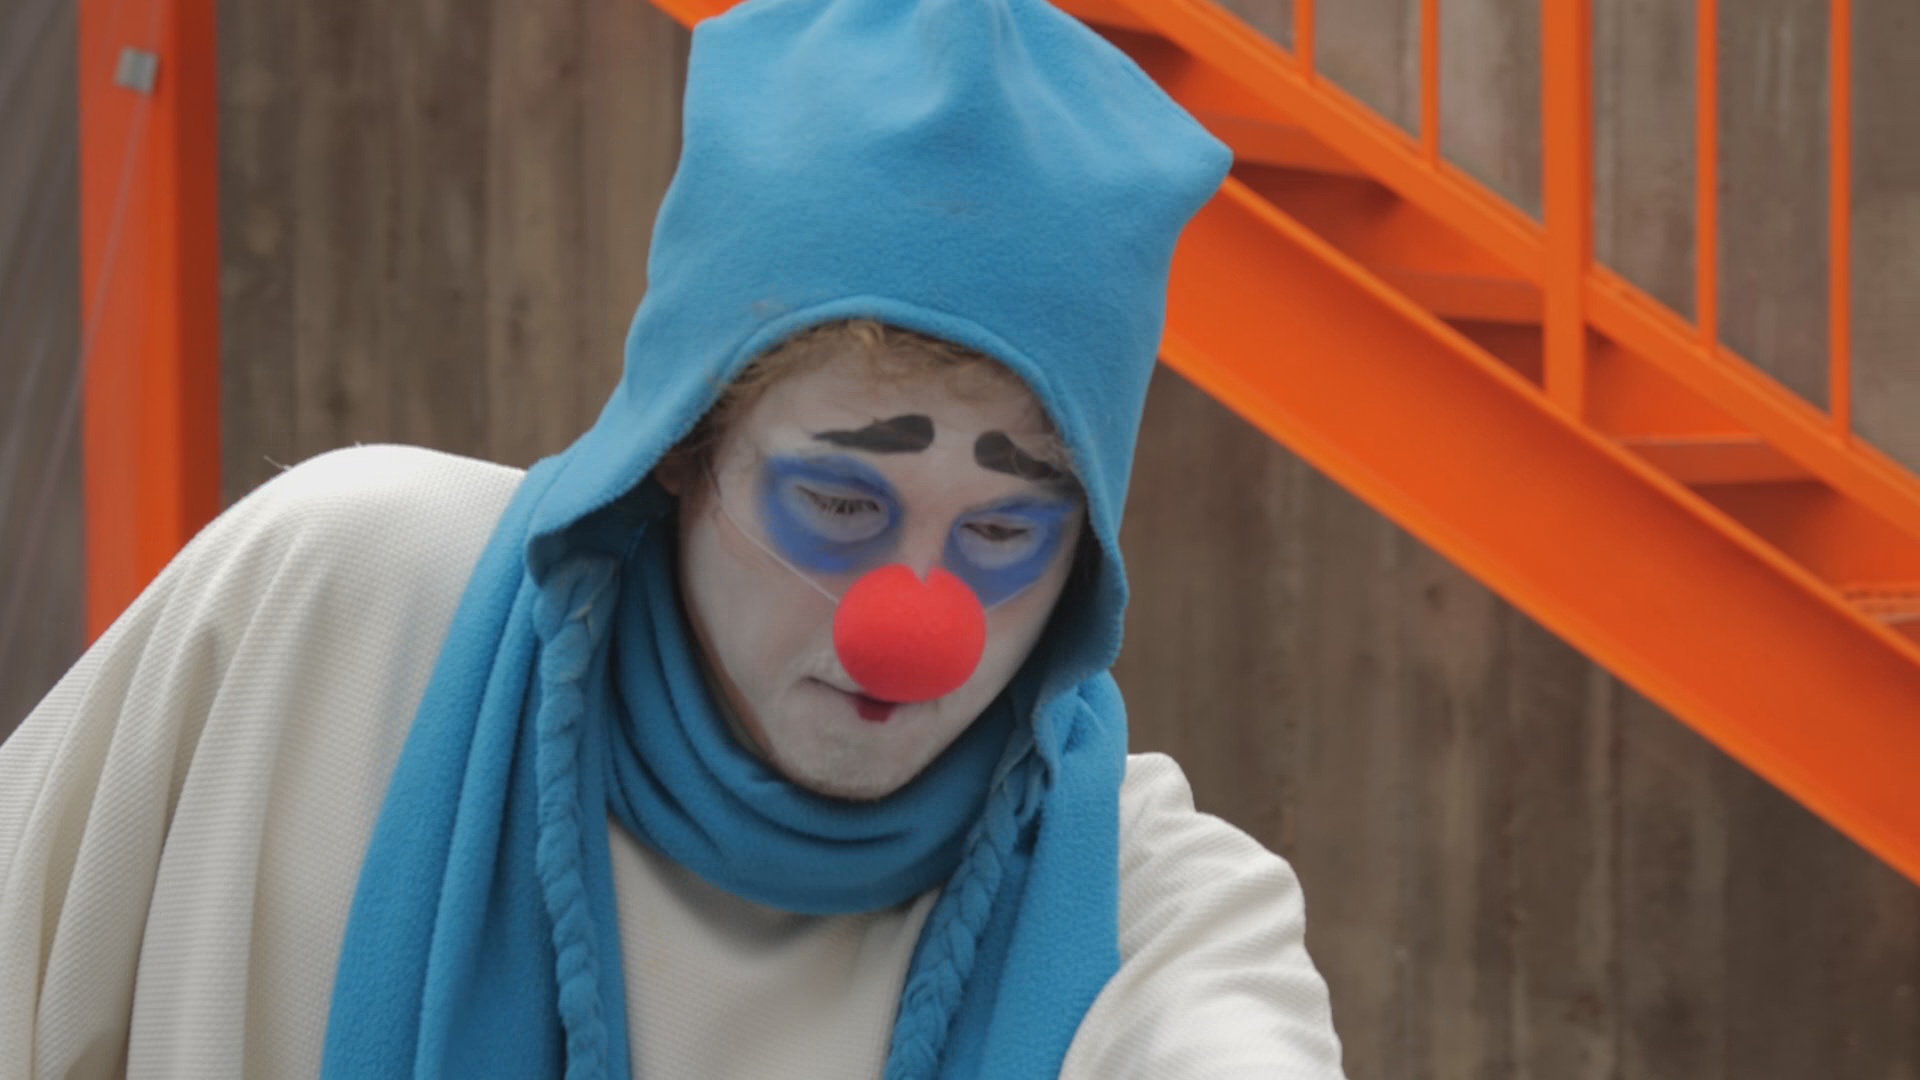 40 спектаклей, карнавал и клоуны из Израиля. В Уфе пройдет фестиваль уличных театров «Айда фест»